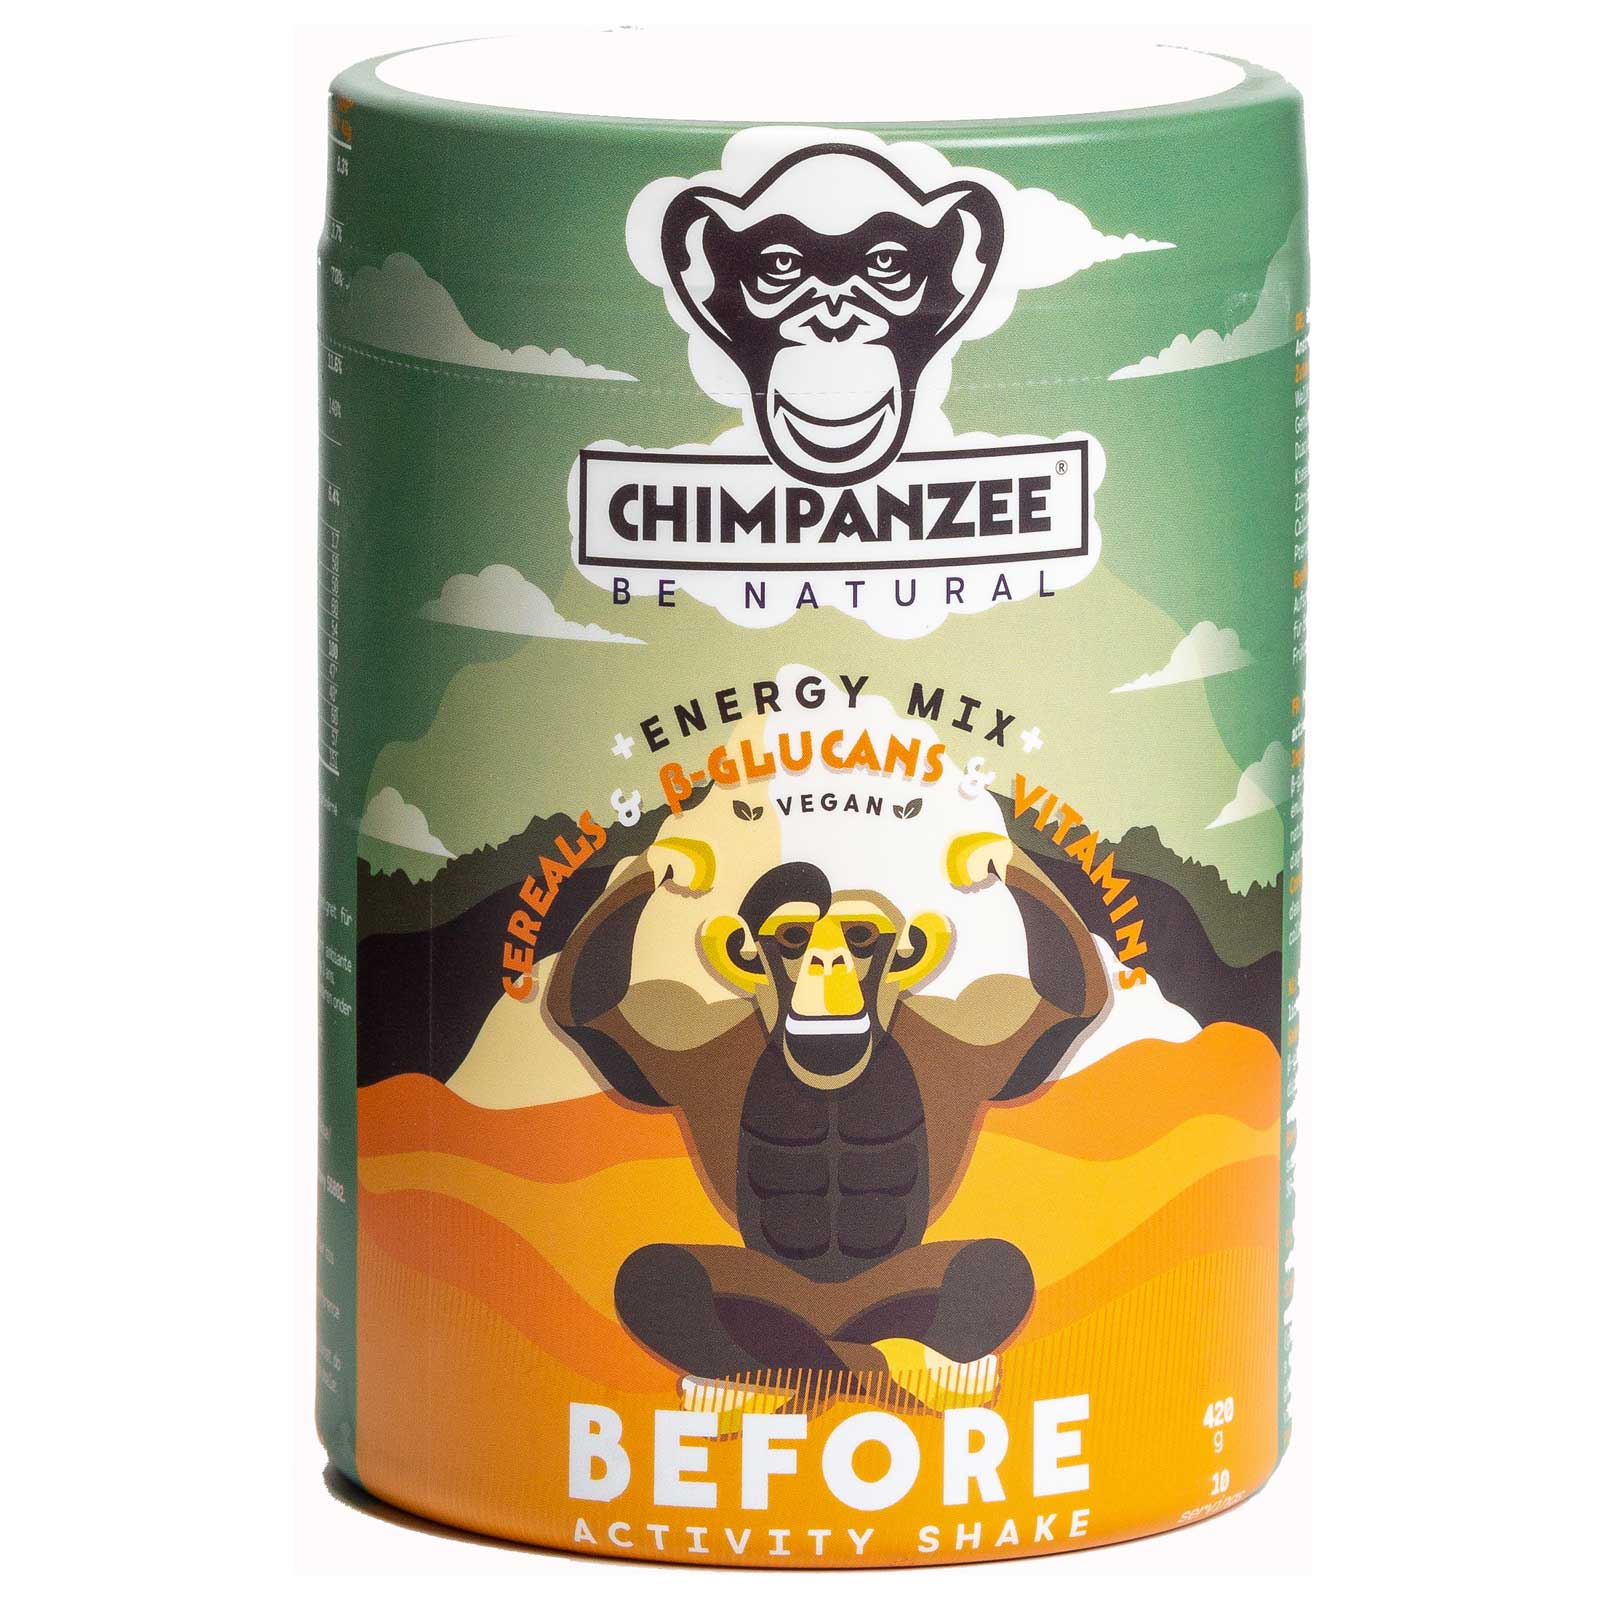 Produktbild von Chimpanzee QuickMix Energy - Before Activity Shake - 420g